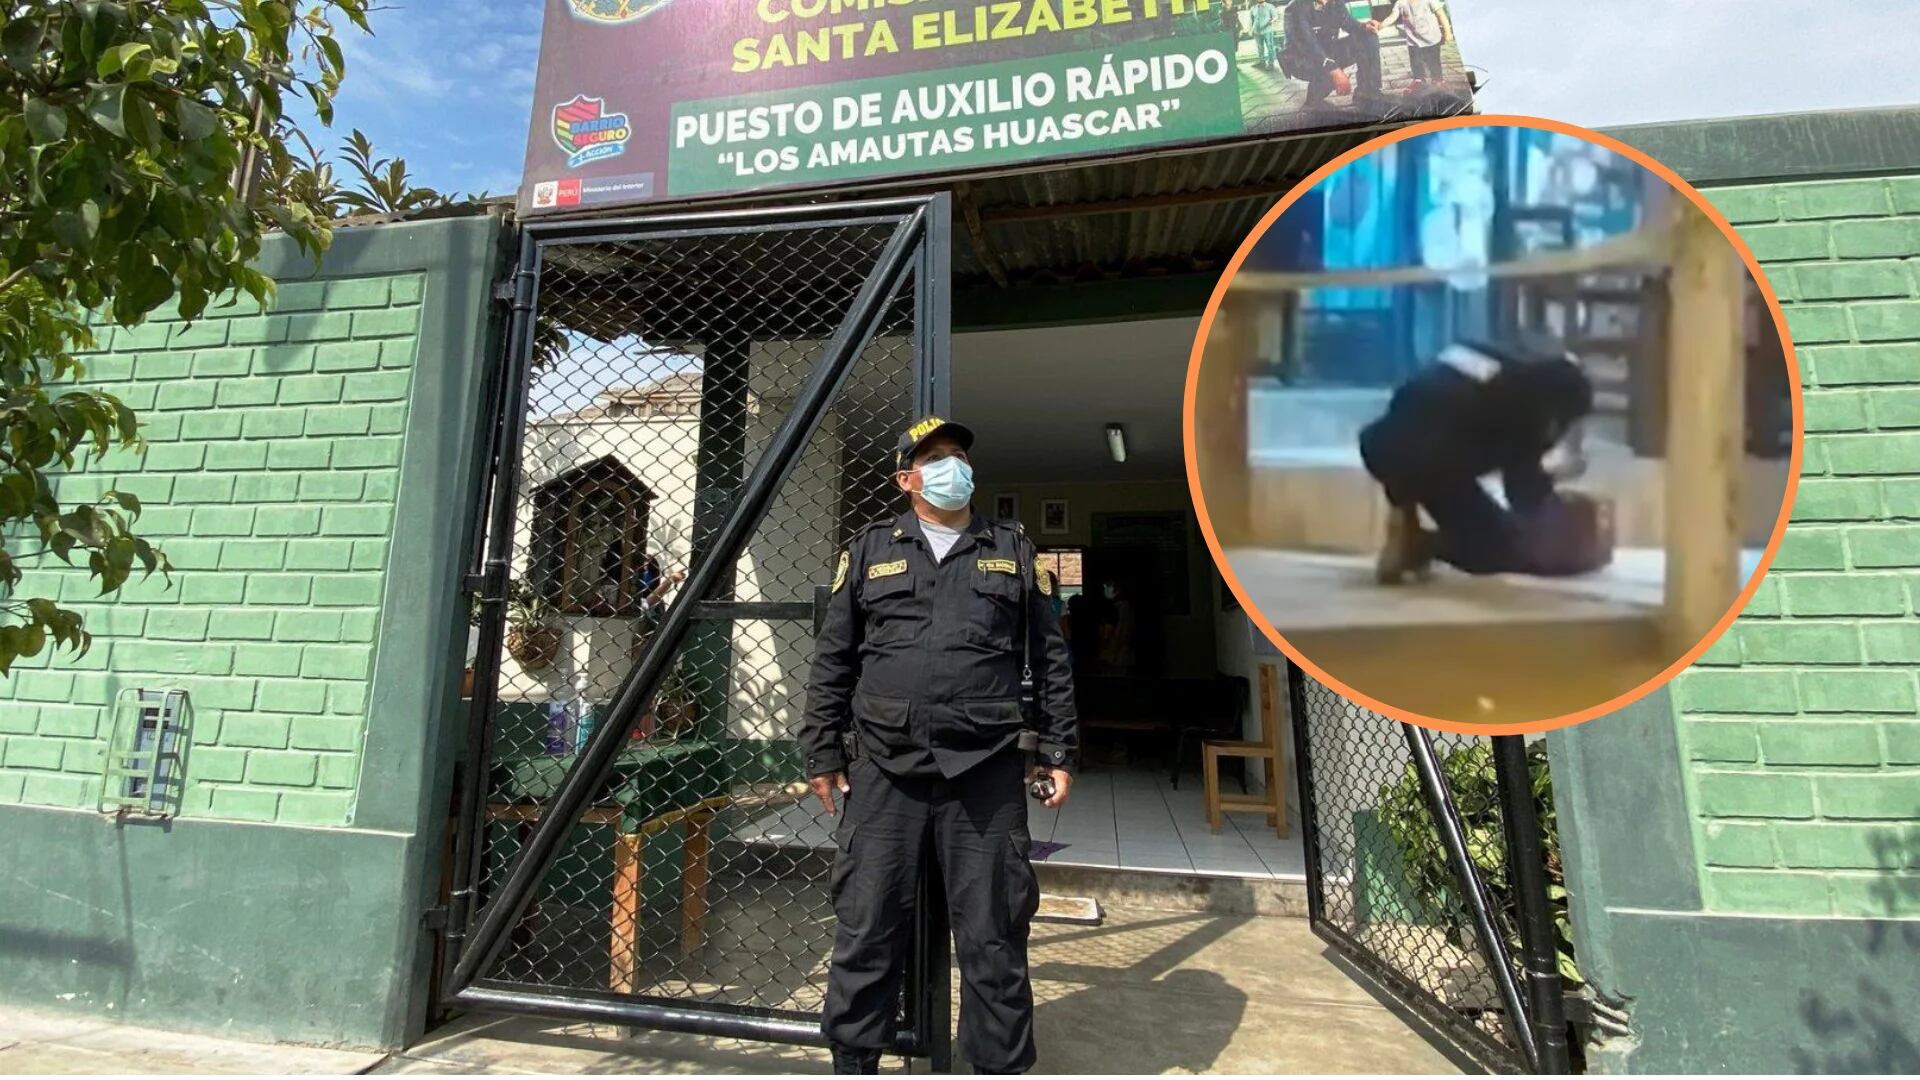 Autoridades informan que se trataría de un nuevo intento de extorsión en San Juan de Lurigancho. - Créditos: Andina/Panamericana